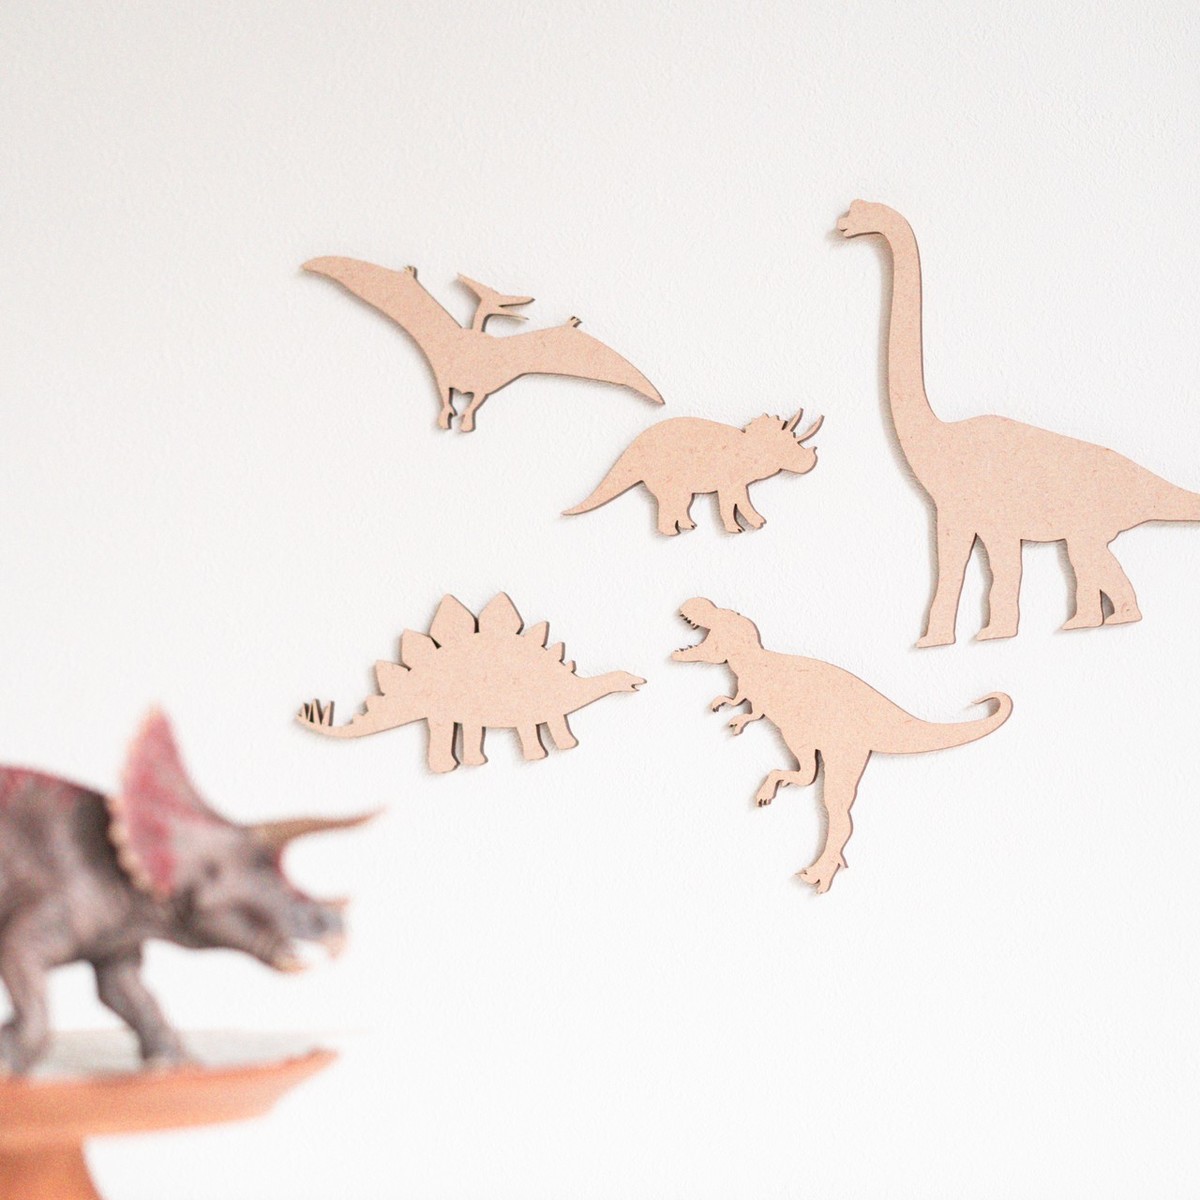 楽天市場 木製 恐竜 レター バナー ガーランド 誕生日 飾り 恐竜 ダイナソー グッズ ベビー キッズ イラスト セット ティラノサウルス T レックス プテラノドン ブラキオサウルス トリケラトプス ステゴサウルス おもちゃ 玩具 1歳 2歳 3歳 遊び 趣味 子供 好き